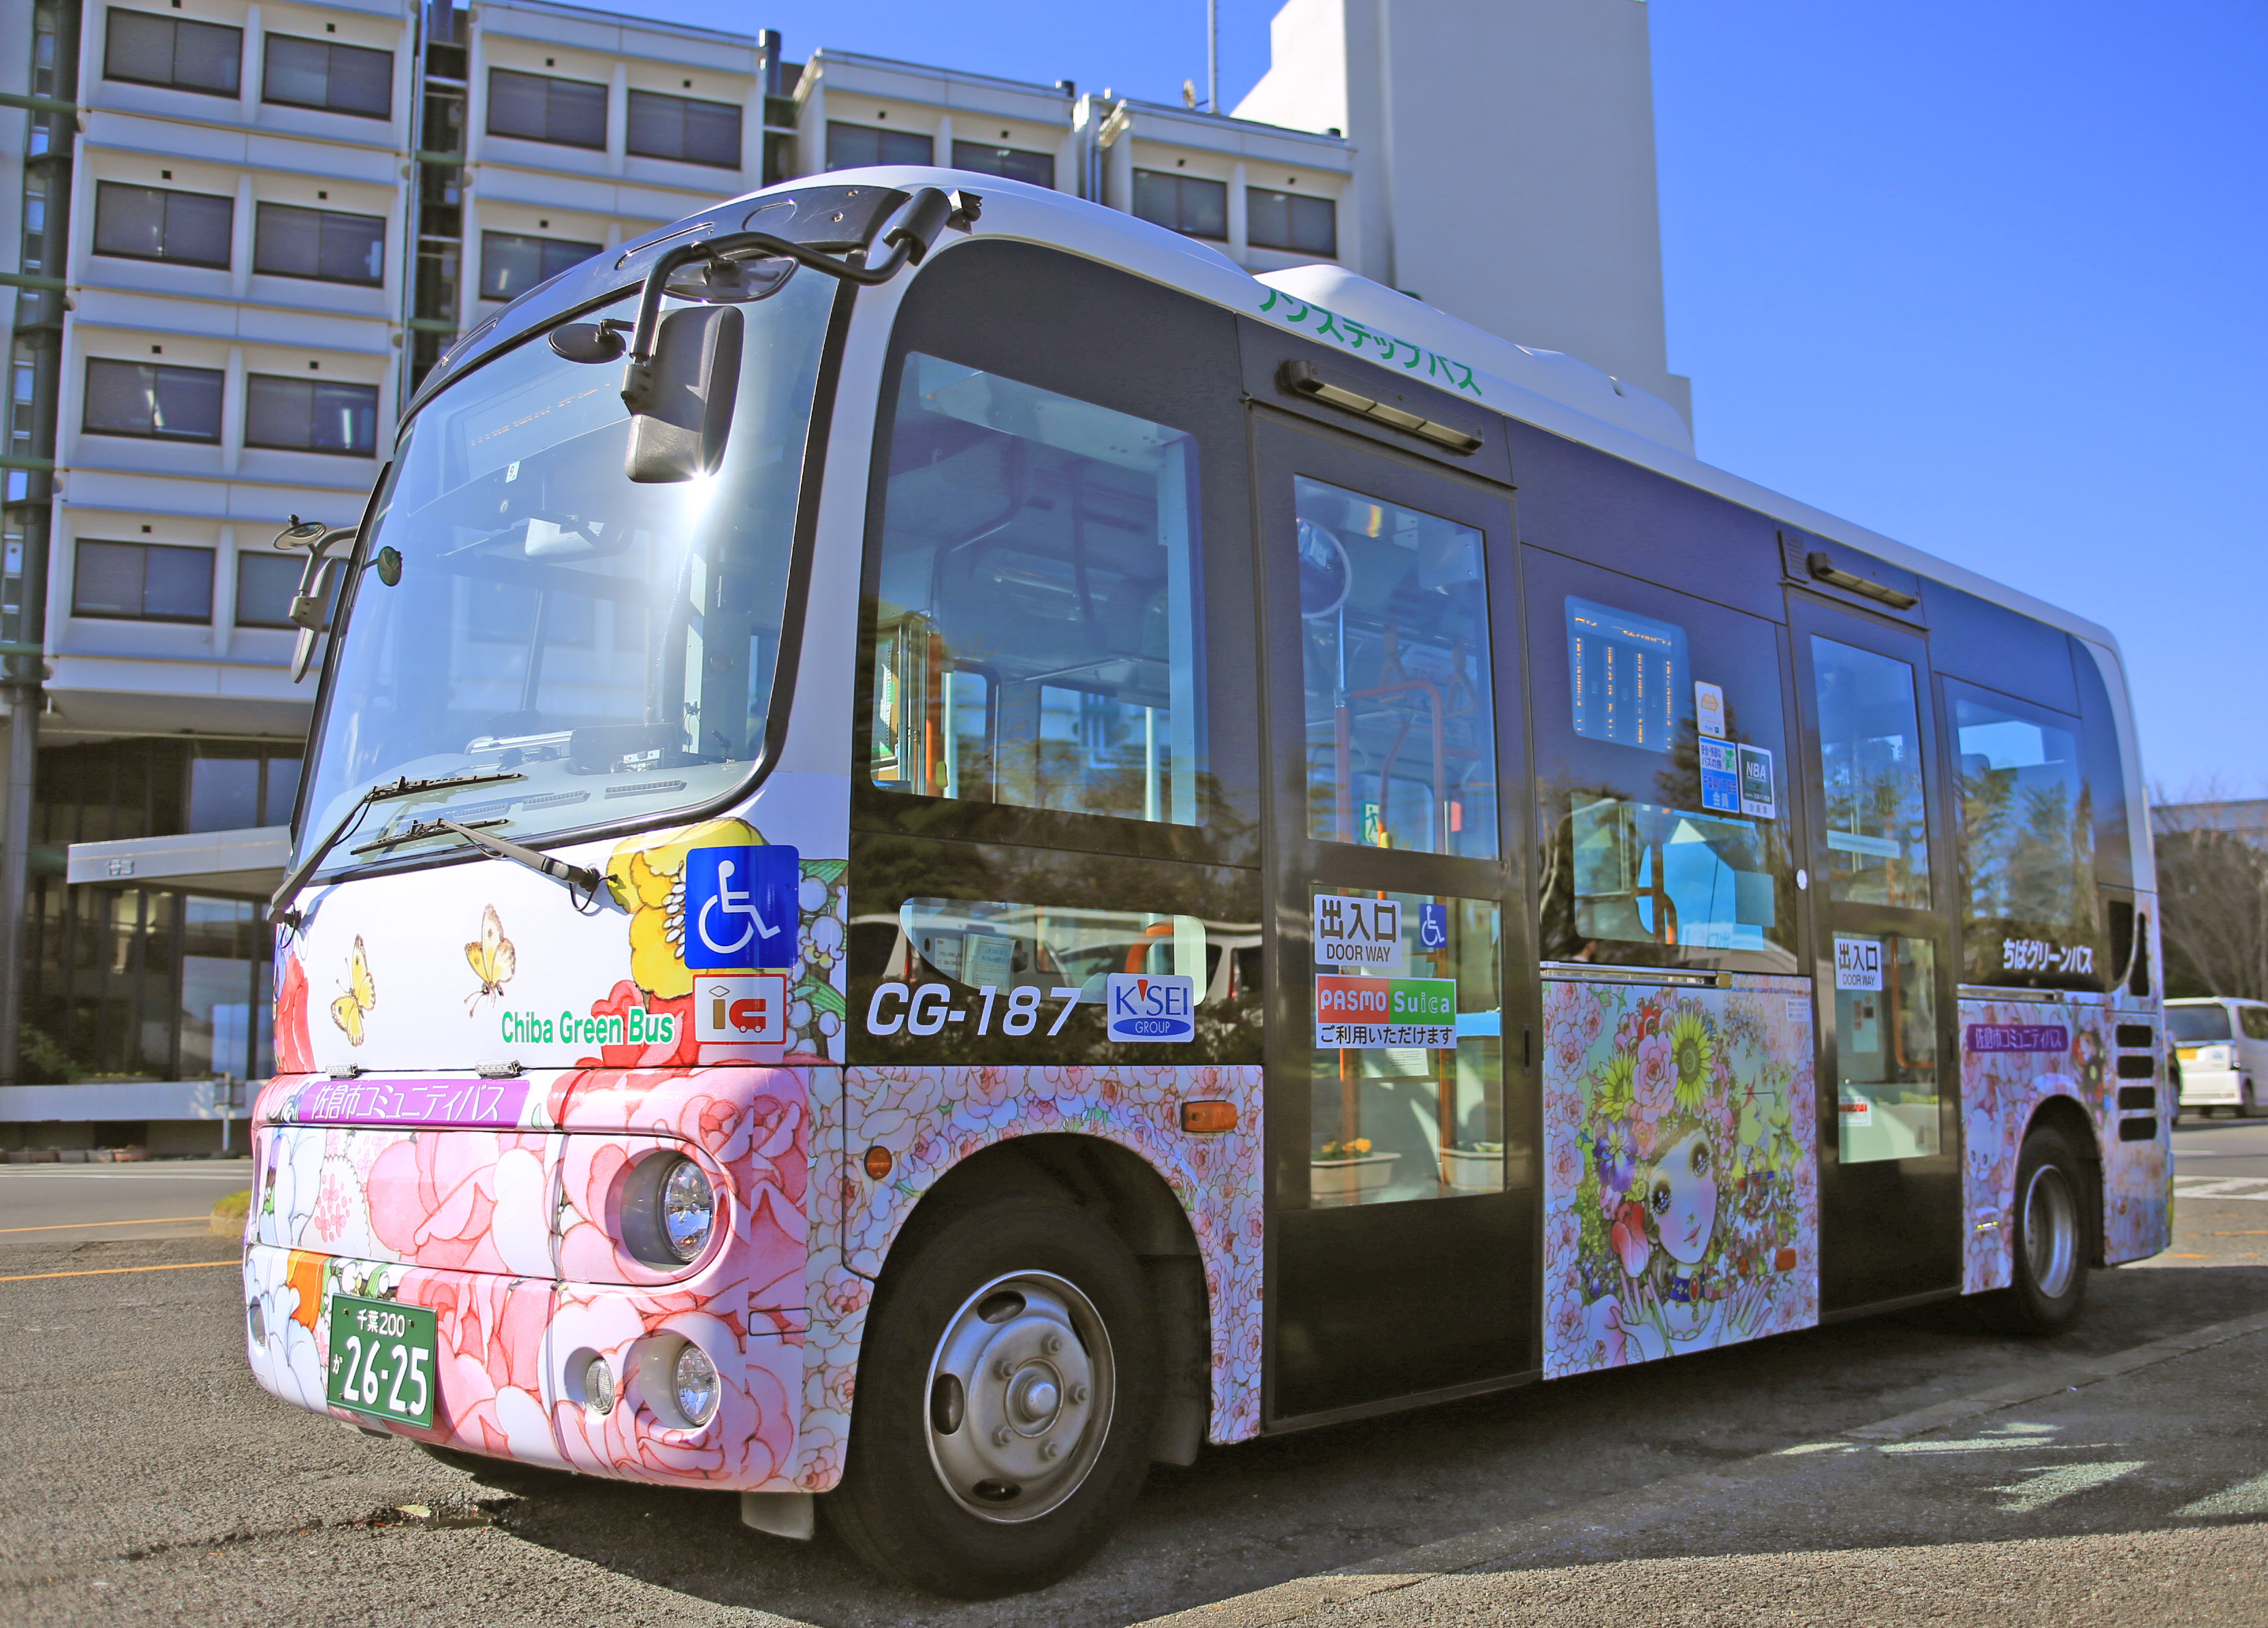 千葉県佐倉市のコミュニティバスに 高橋真琴さんの少女絵デザインが登場 12 1 運行開始 佐倉市のプレスリリース